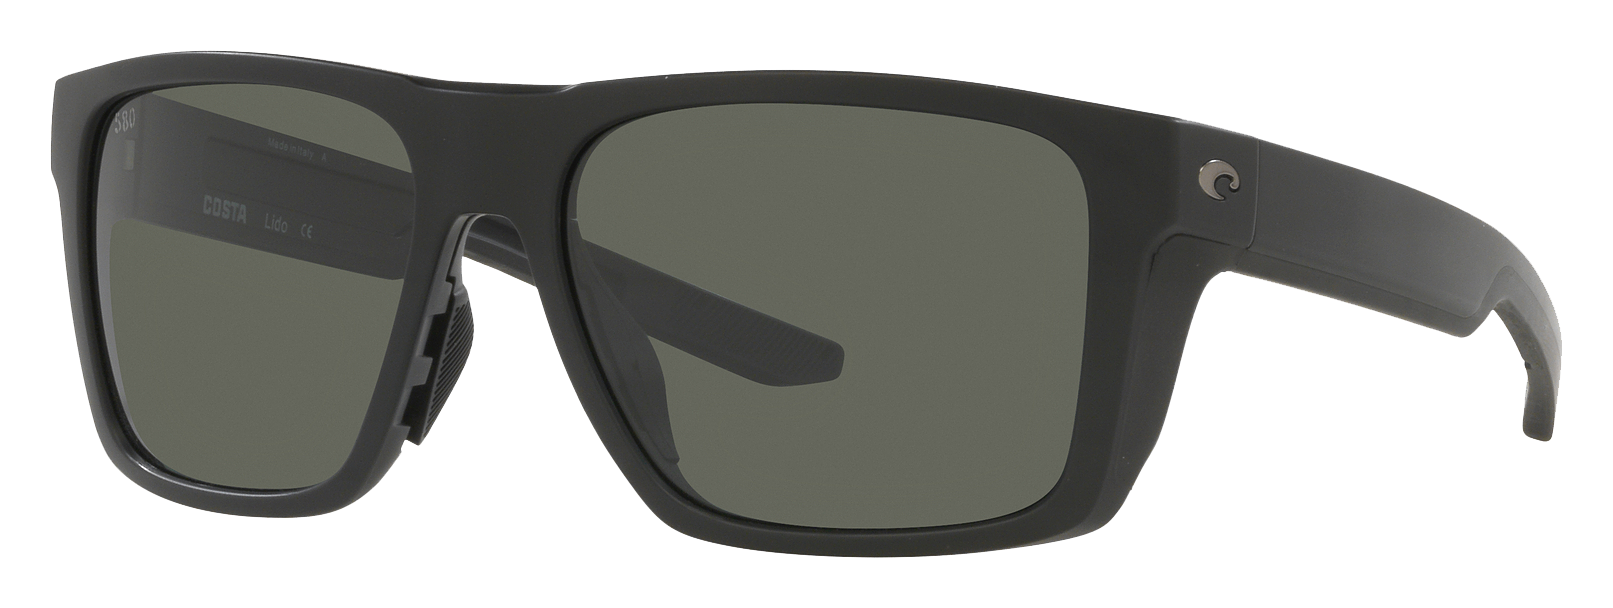 Costa Del Mar Lido 580G Glass Polarized Sunglasses - Matte Black/Gray - Large